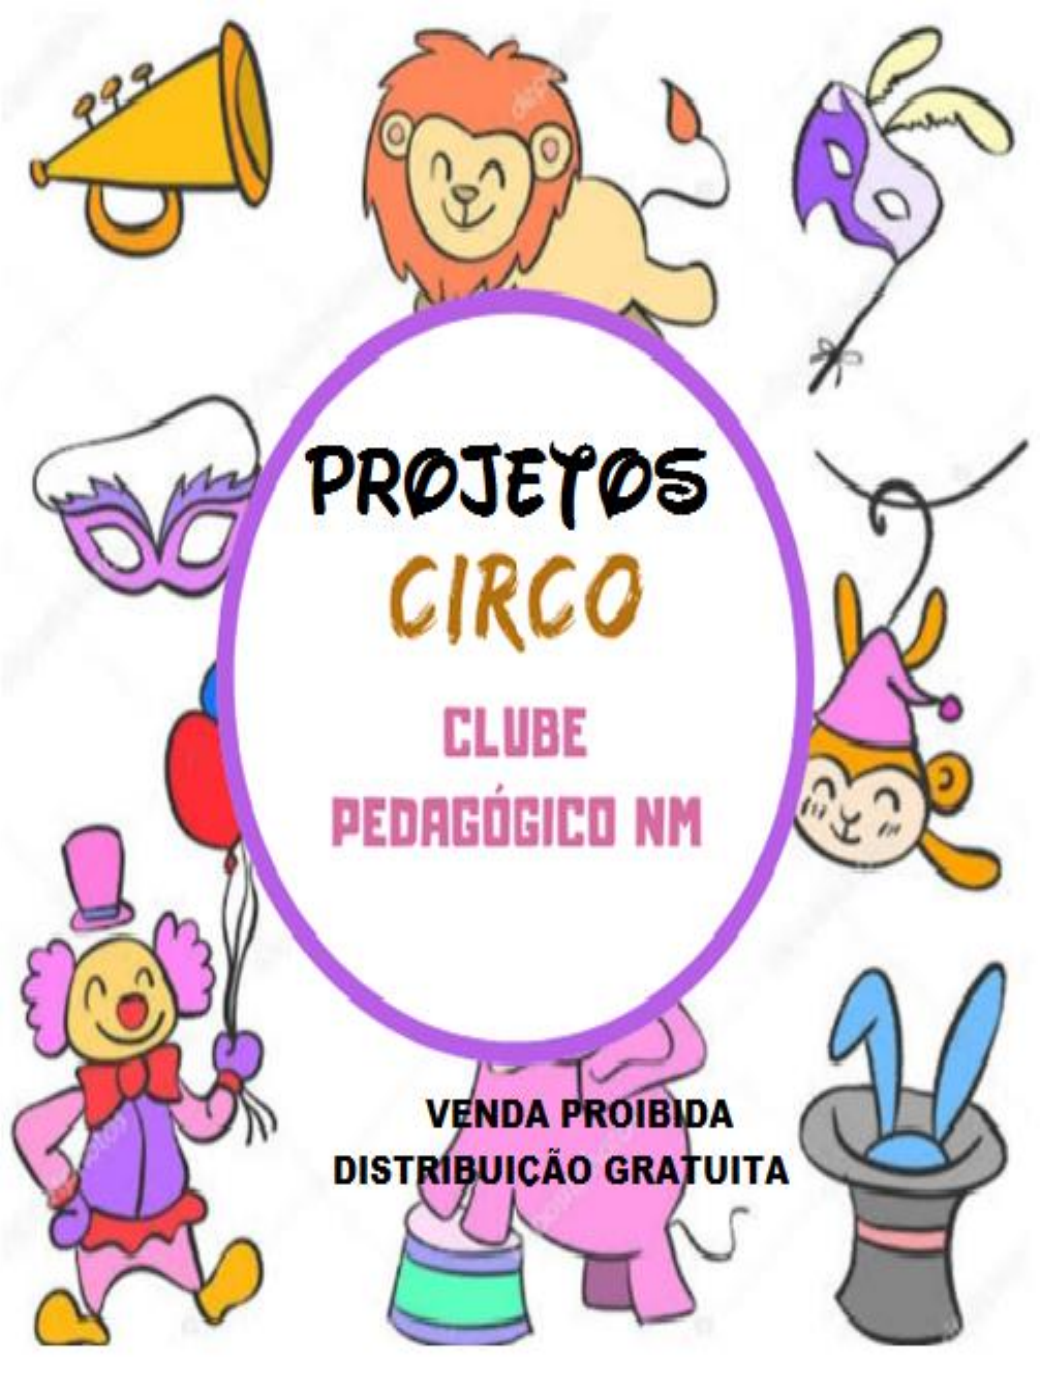 100 Atividades Dia do Circo para Imprimir - Educação Infantil e Maternal -  Online Cursos Gratuitos